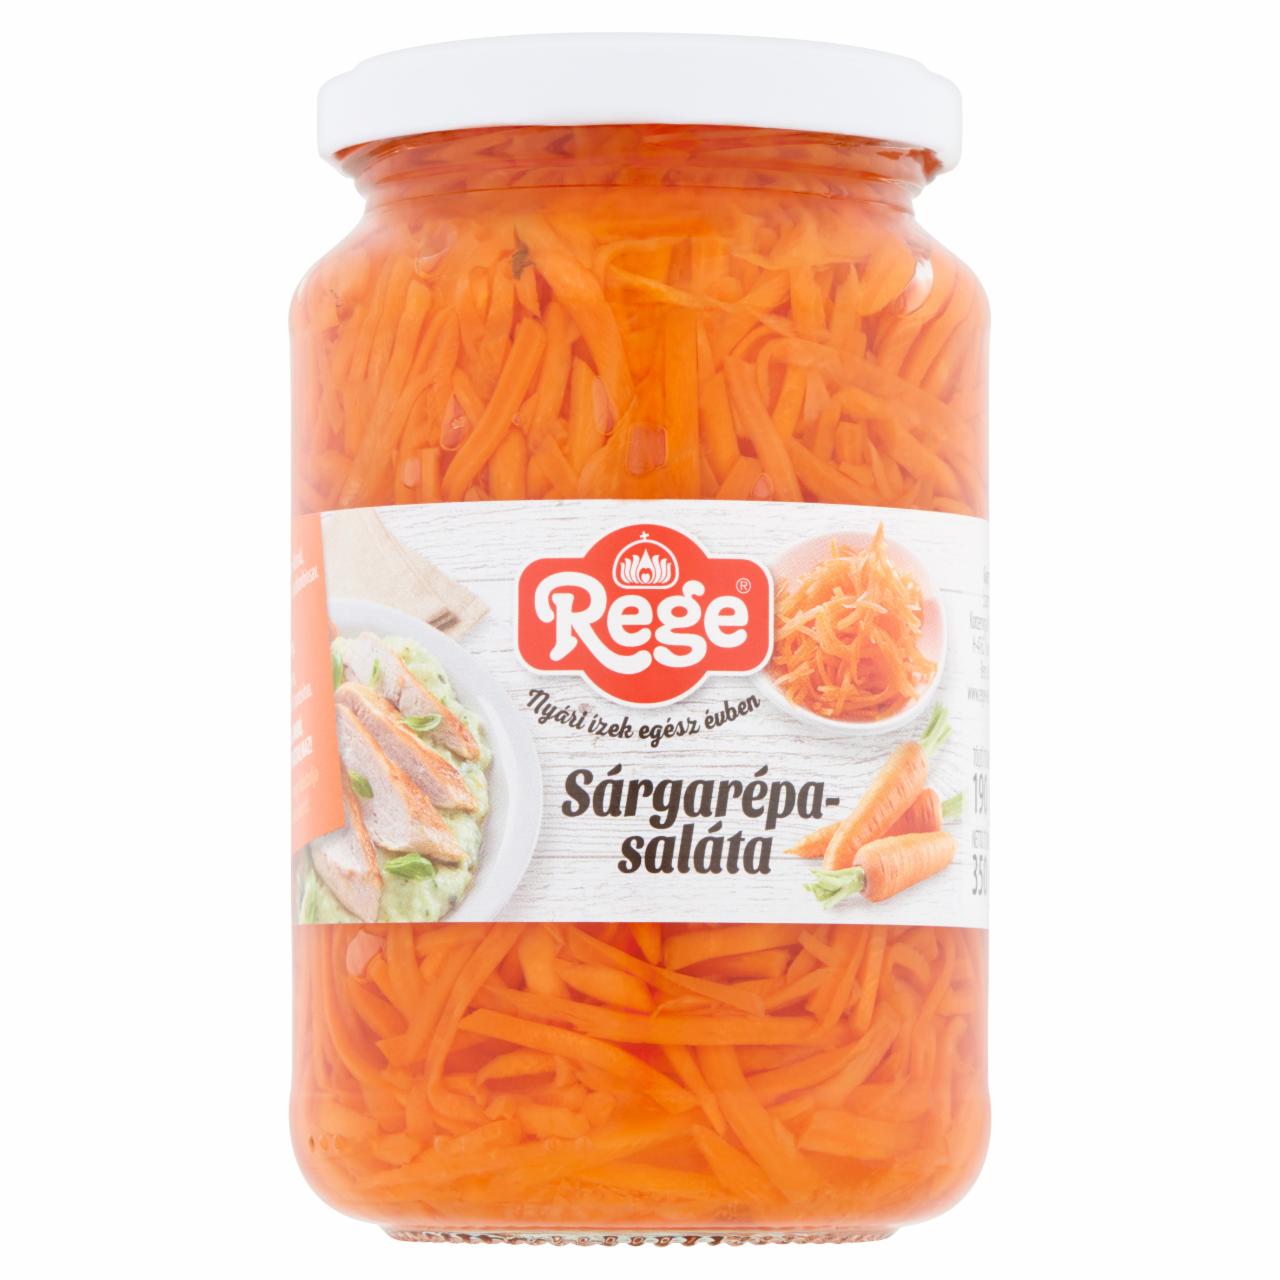 Képek - Rege sárgarépa-saláta 350 g